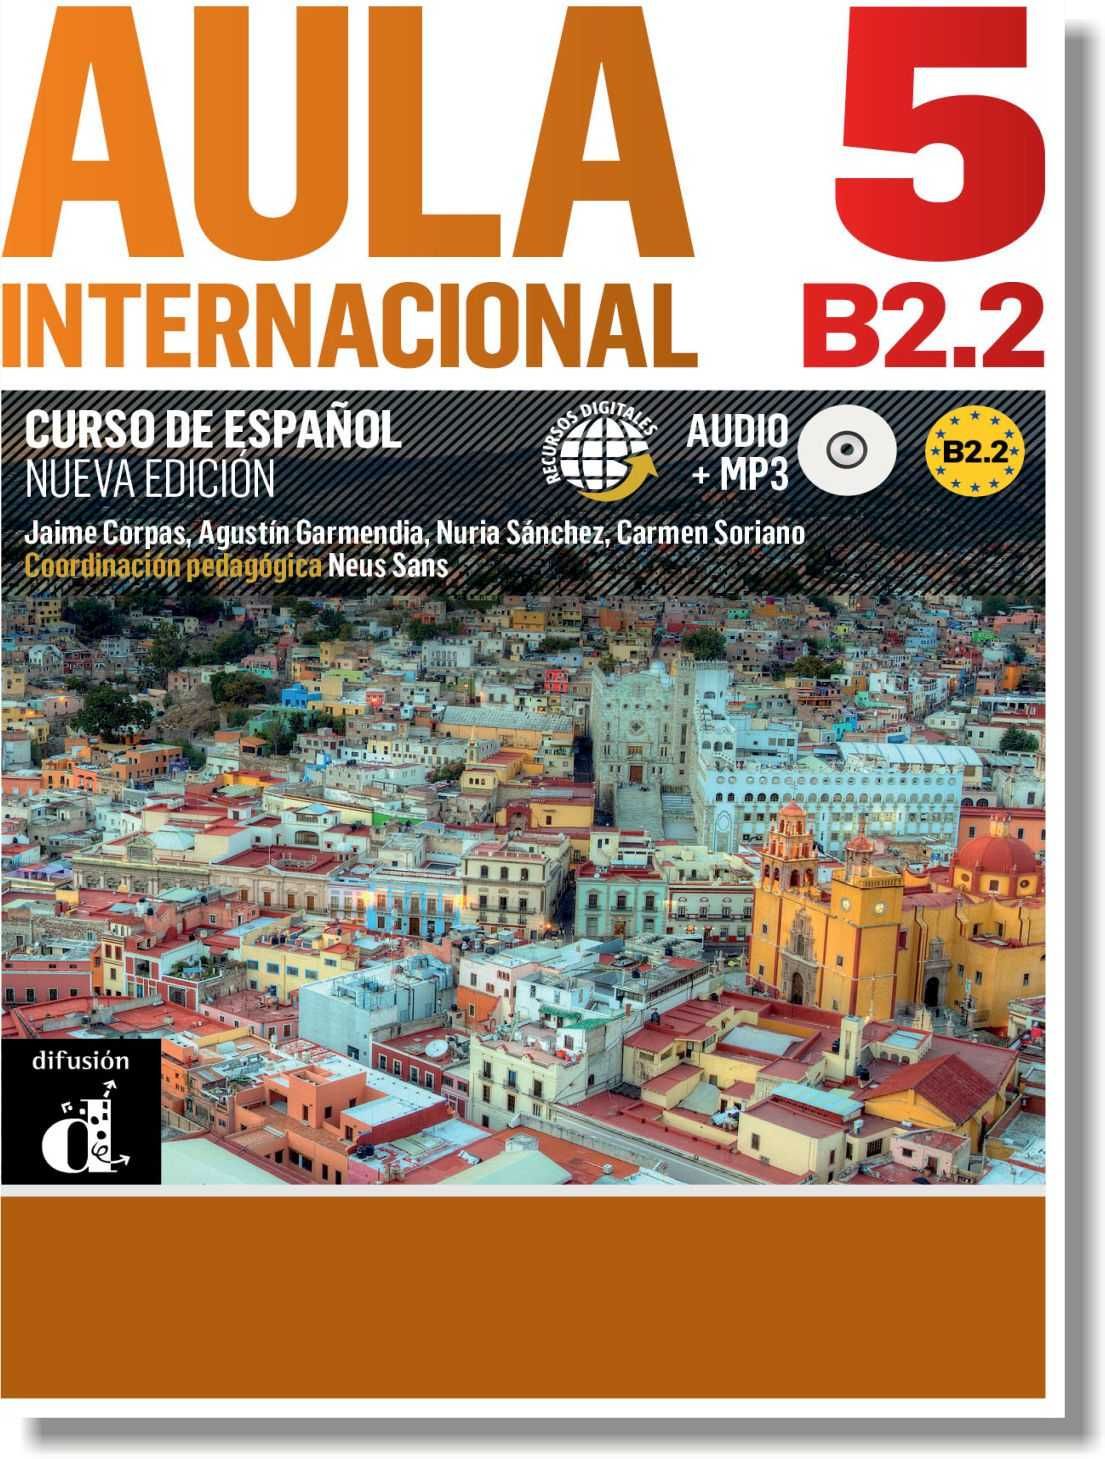 Учебники испанского языка AULA Internacional Nueva Edicion 1-5